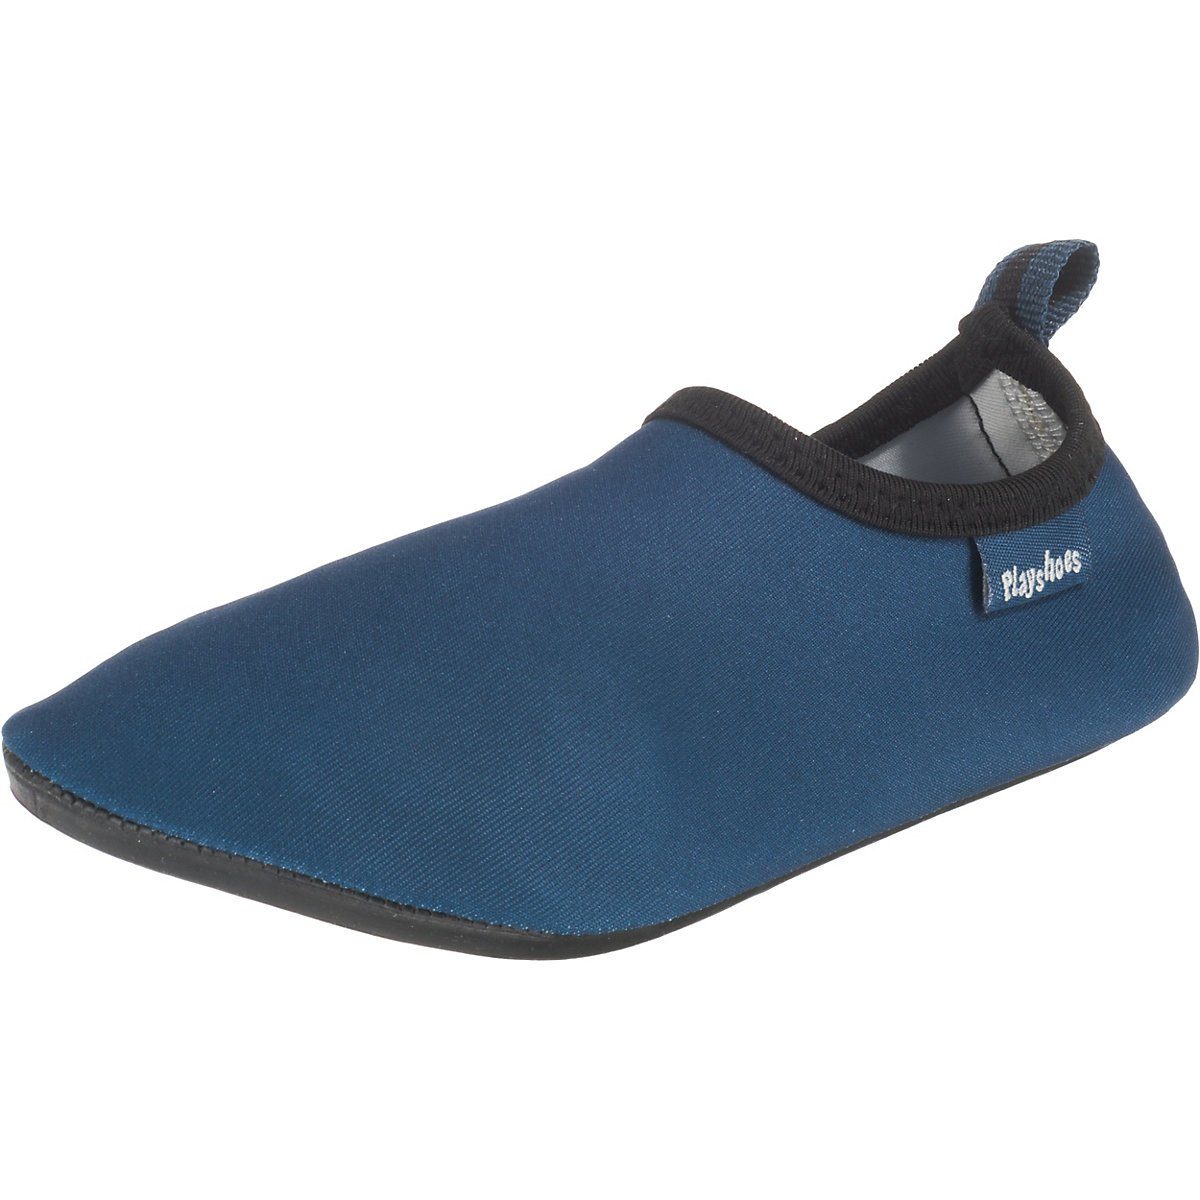 Playshoes Badeschuhe Wasserschuhe Schwimmschuhe, Sohle Badeschuh mit blau Passform, Barfuß-Schuh rutschhemmender Uni flexible